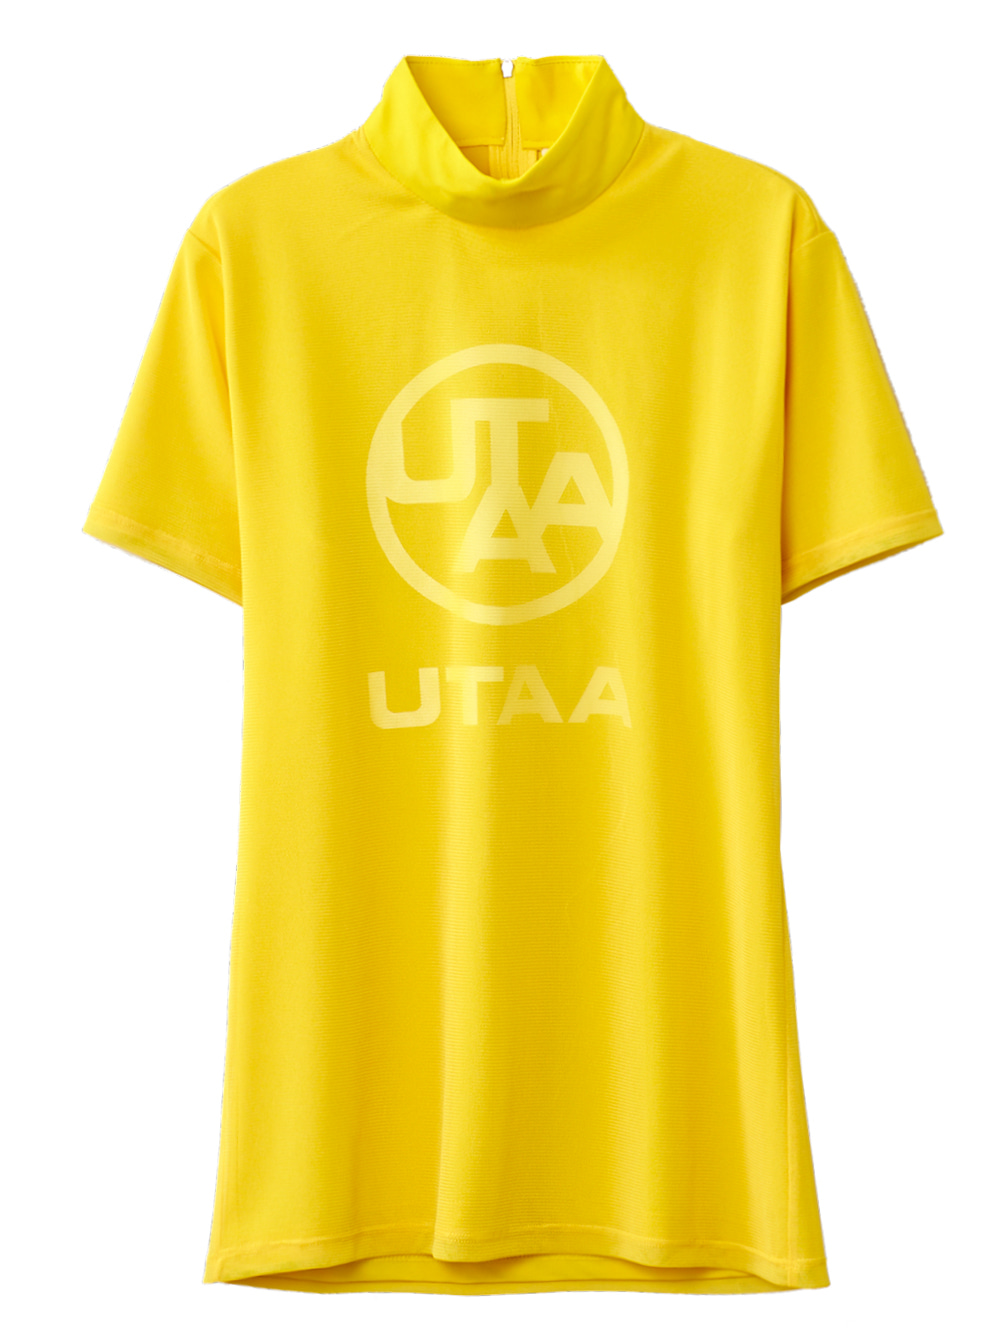 UTAA Swing Fit Mix Mesh Turtleneck Tee : Yellow (UB2TSF179YE)